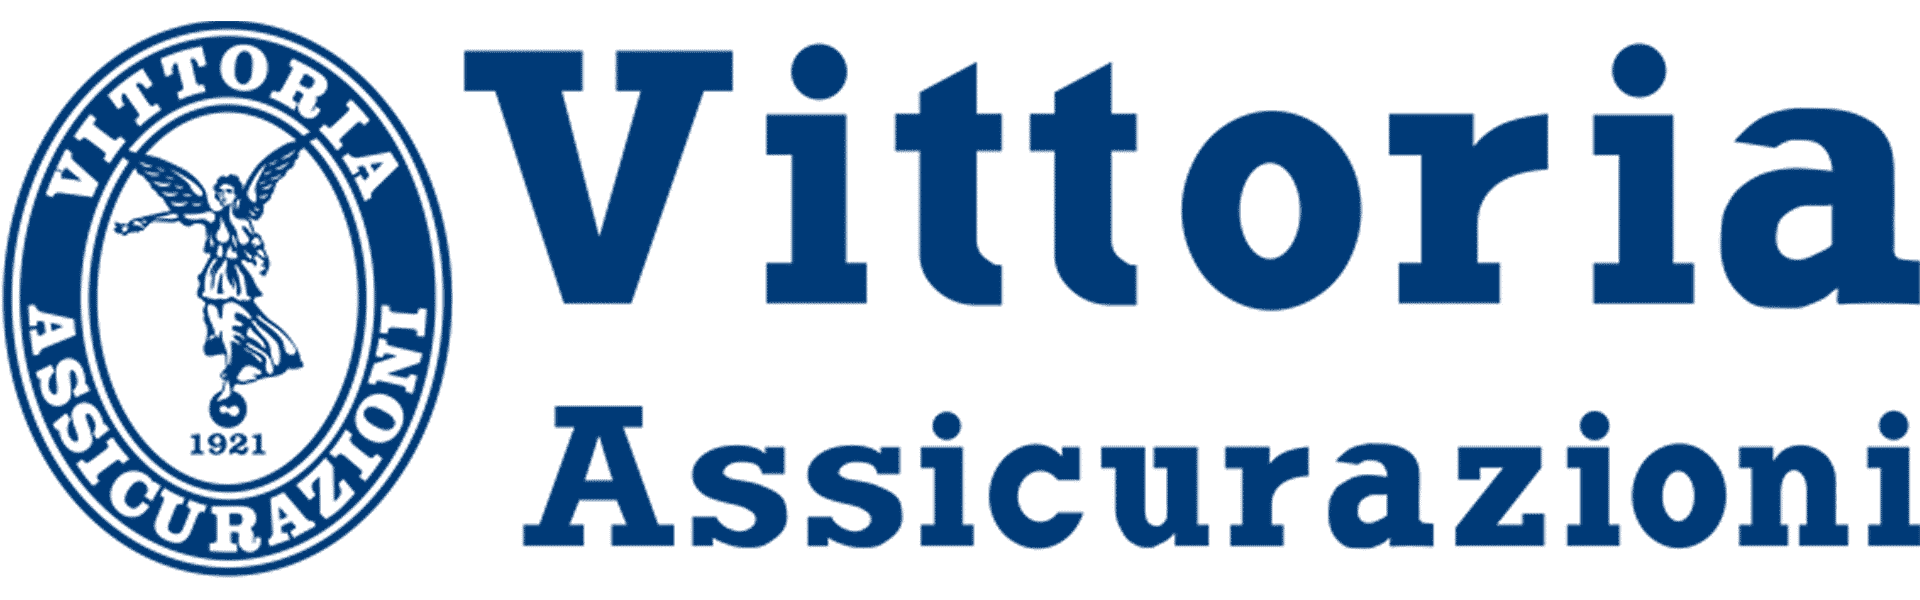 Logo Vittoria Assicurazioni